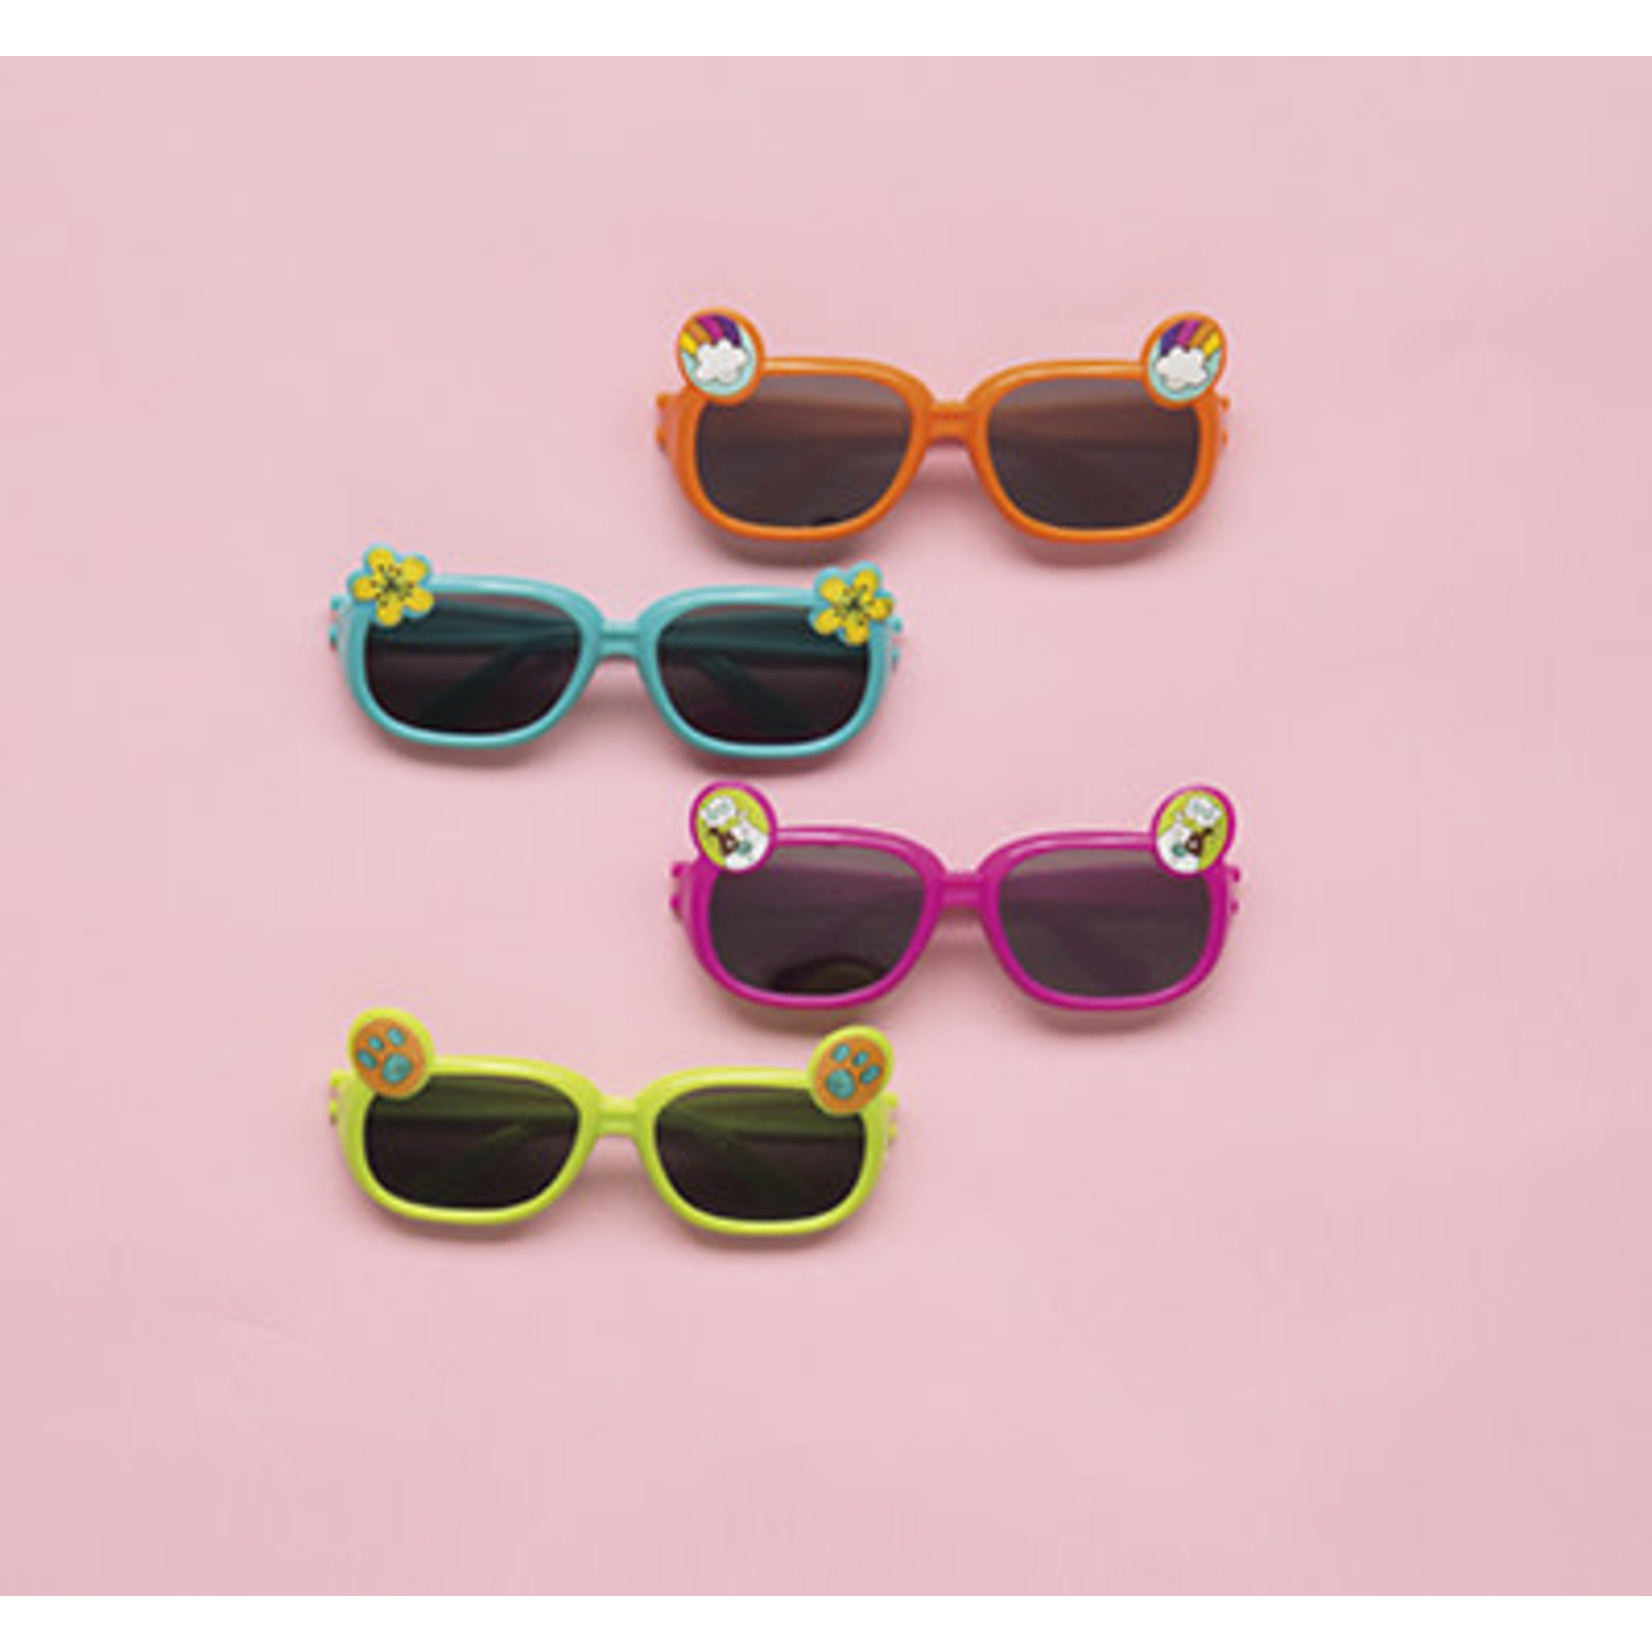 unique Children's Novelty Sunglasses - 4ct.